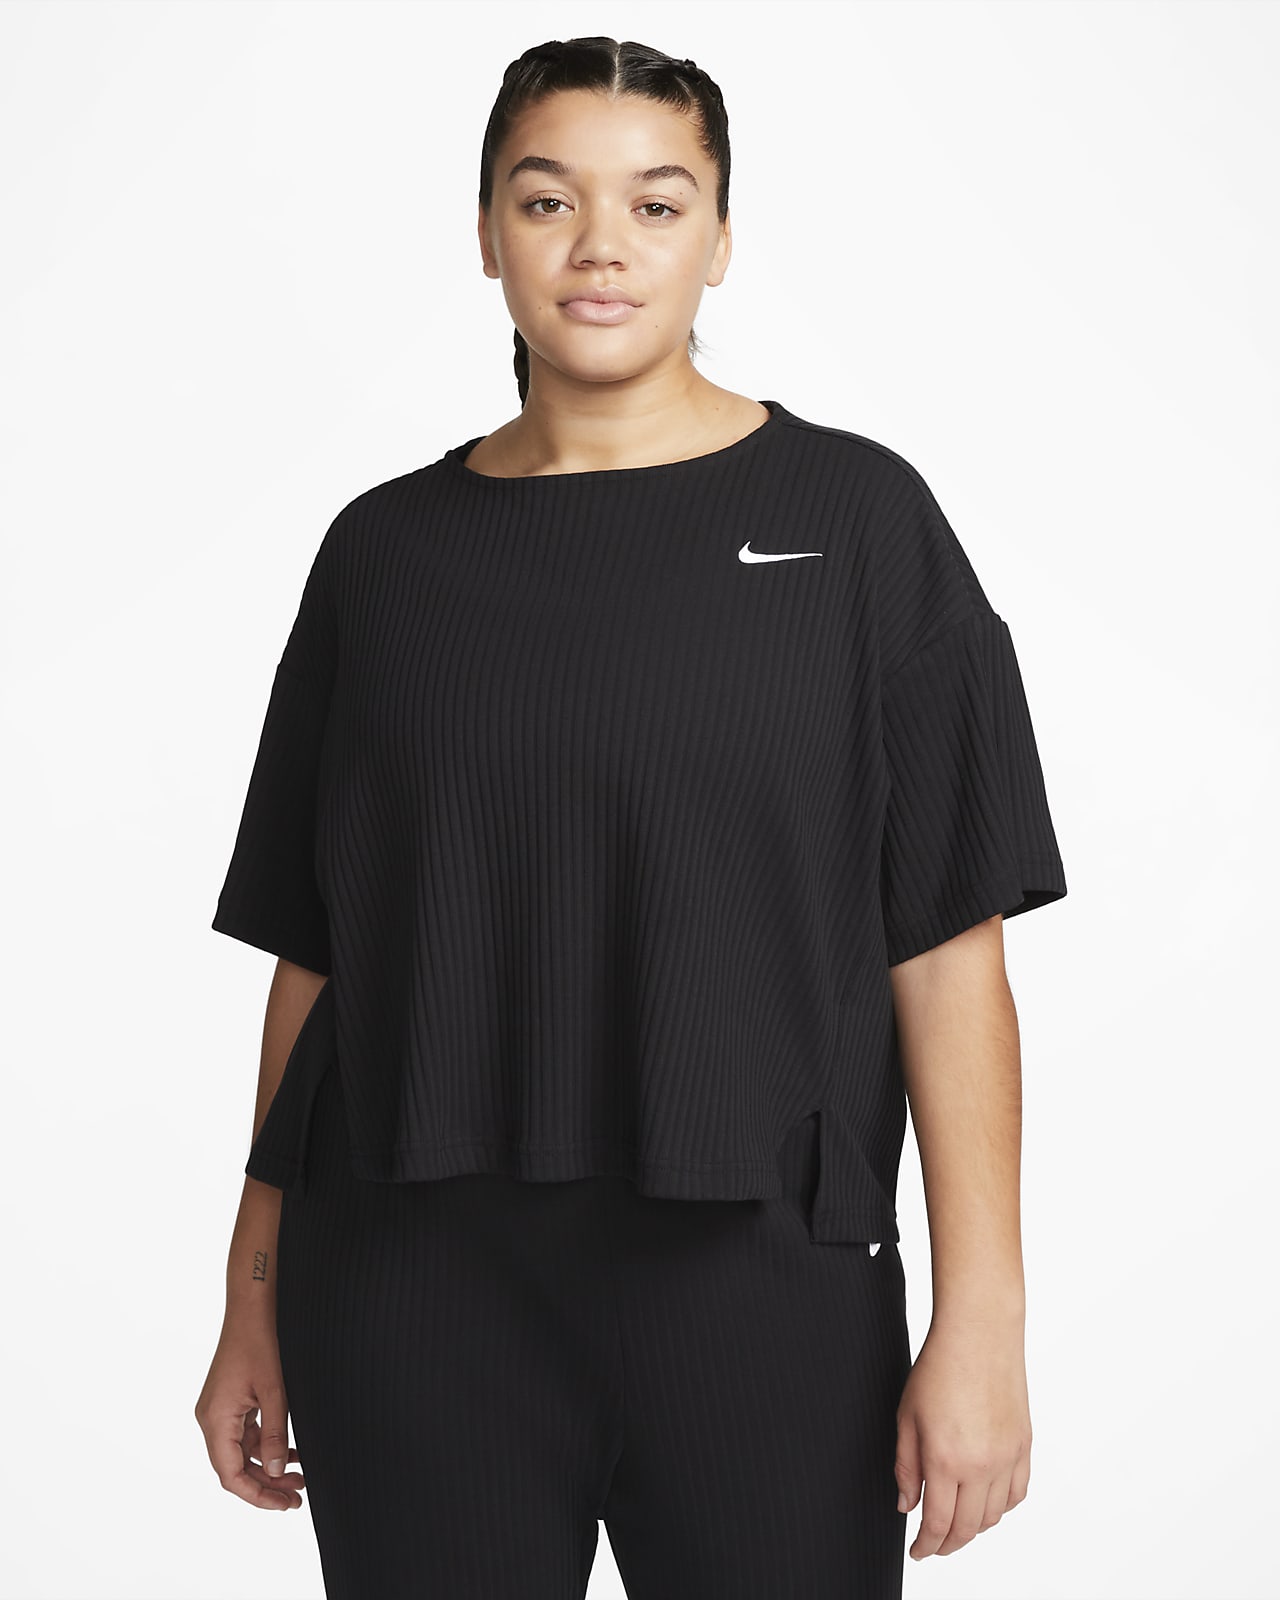 Nike - Ensemble en jersey côtelé à petit logo virgule - Noir